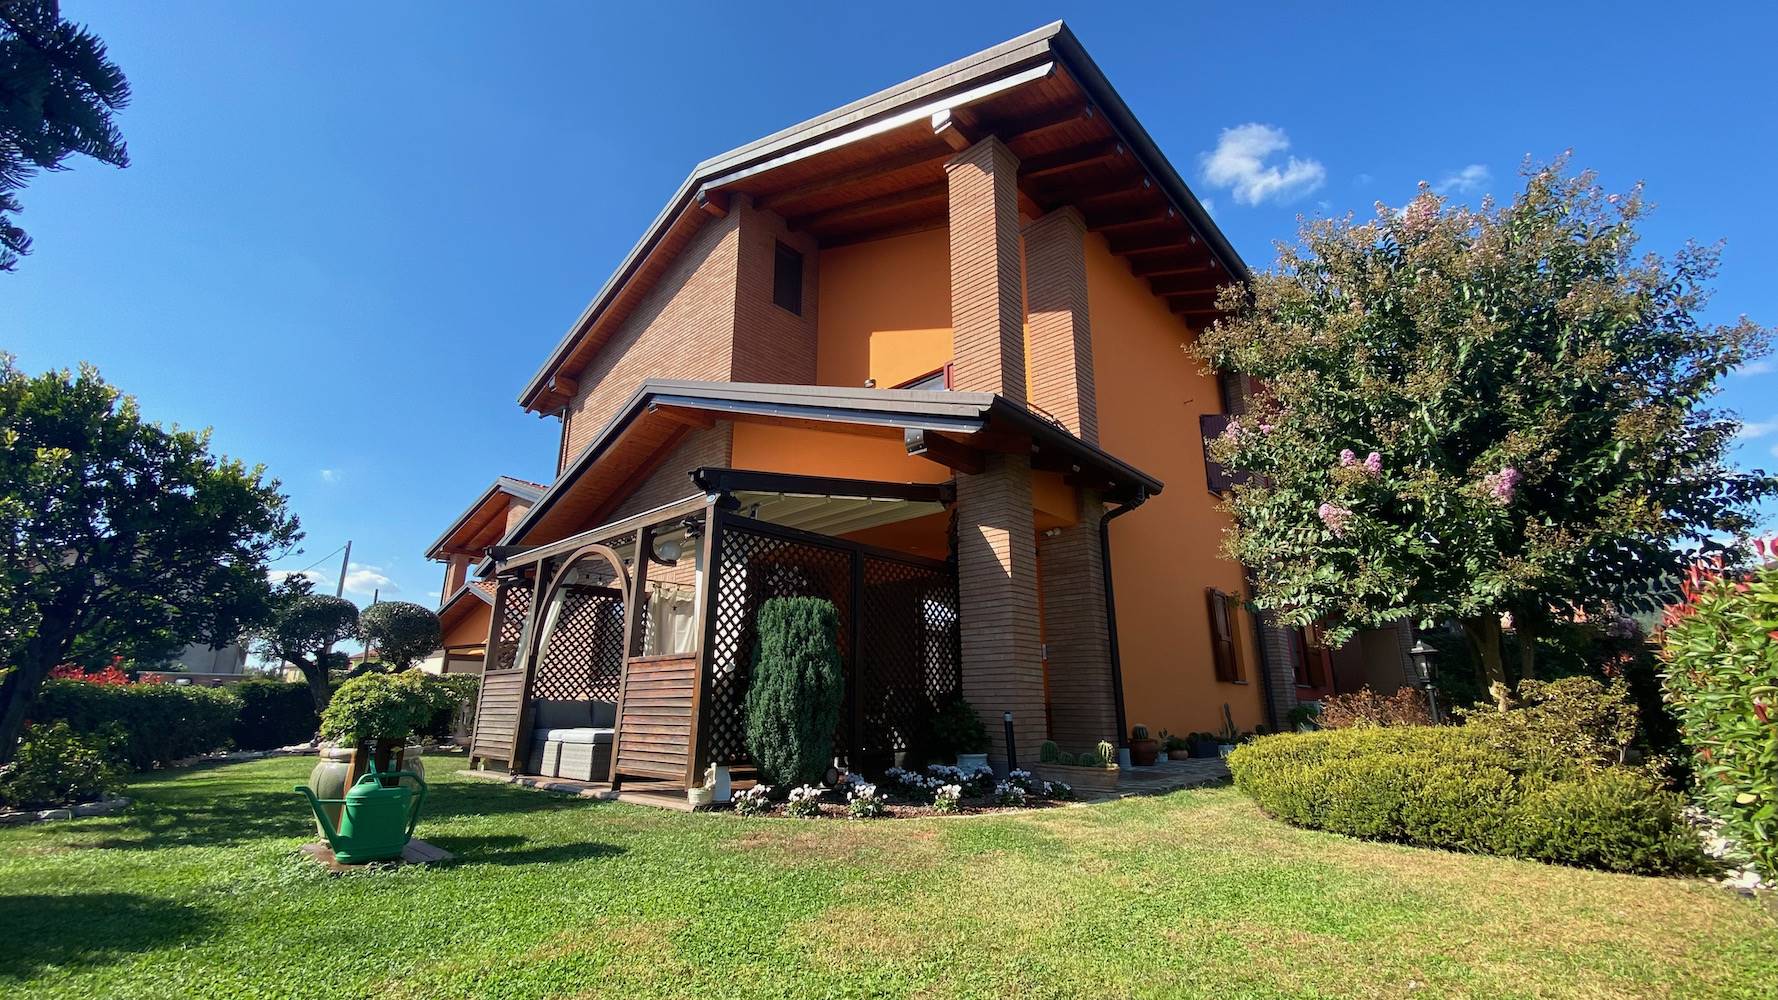 Villa in vendita a Sotto il Monte Giovanni XXIII, 5 locali, prezzo € 450.000 | CambioCasa.it